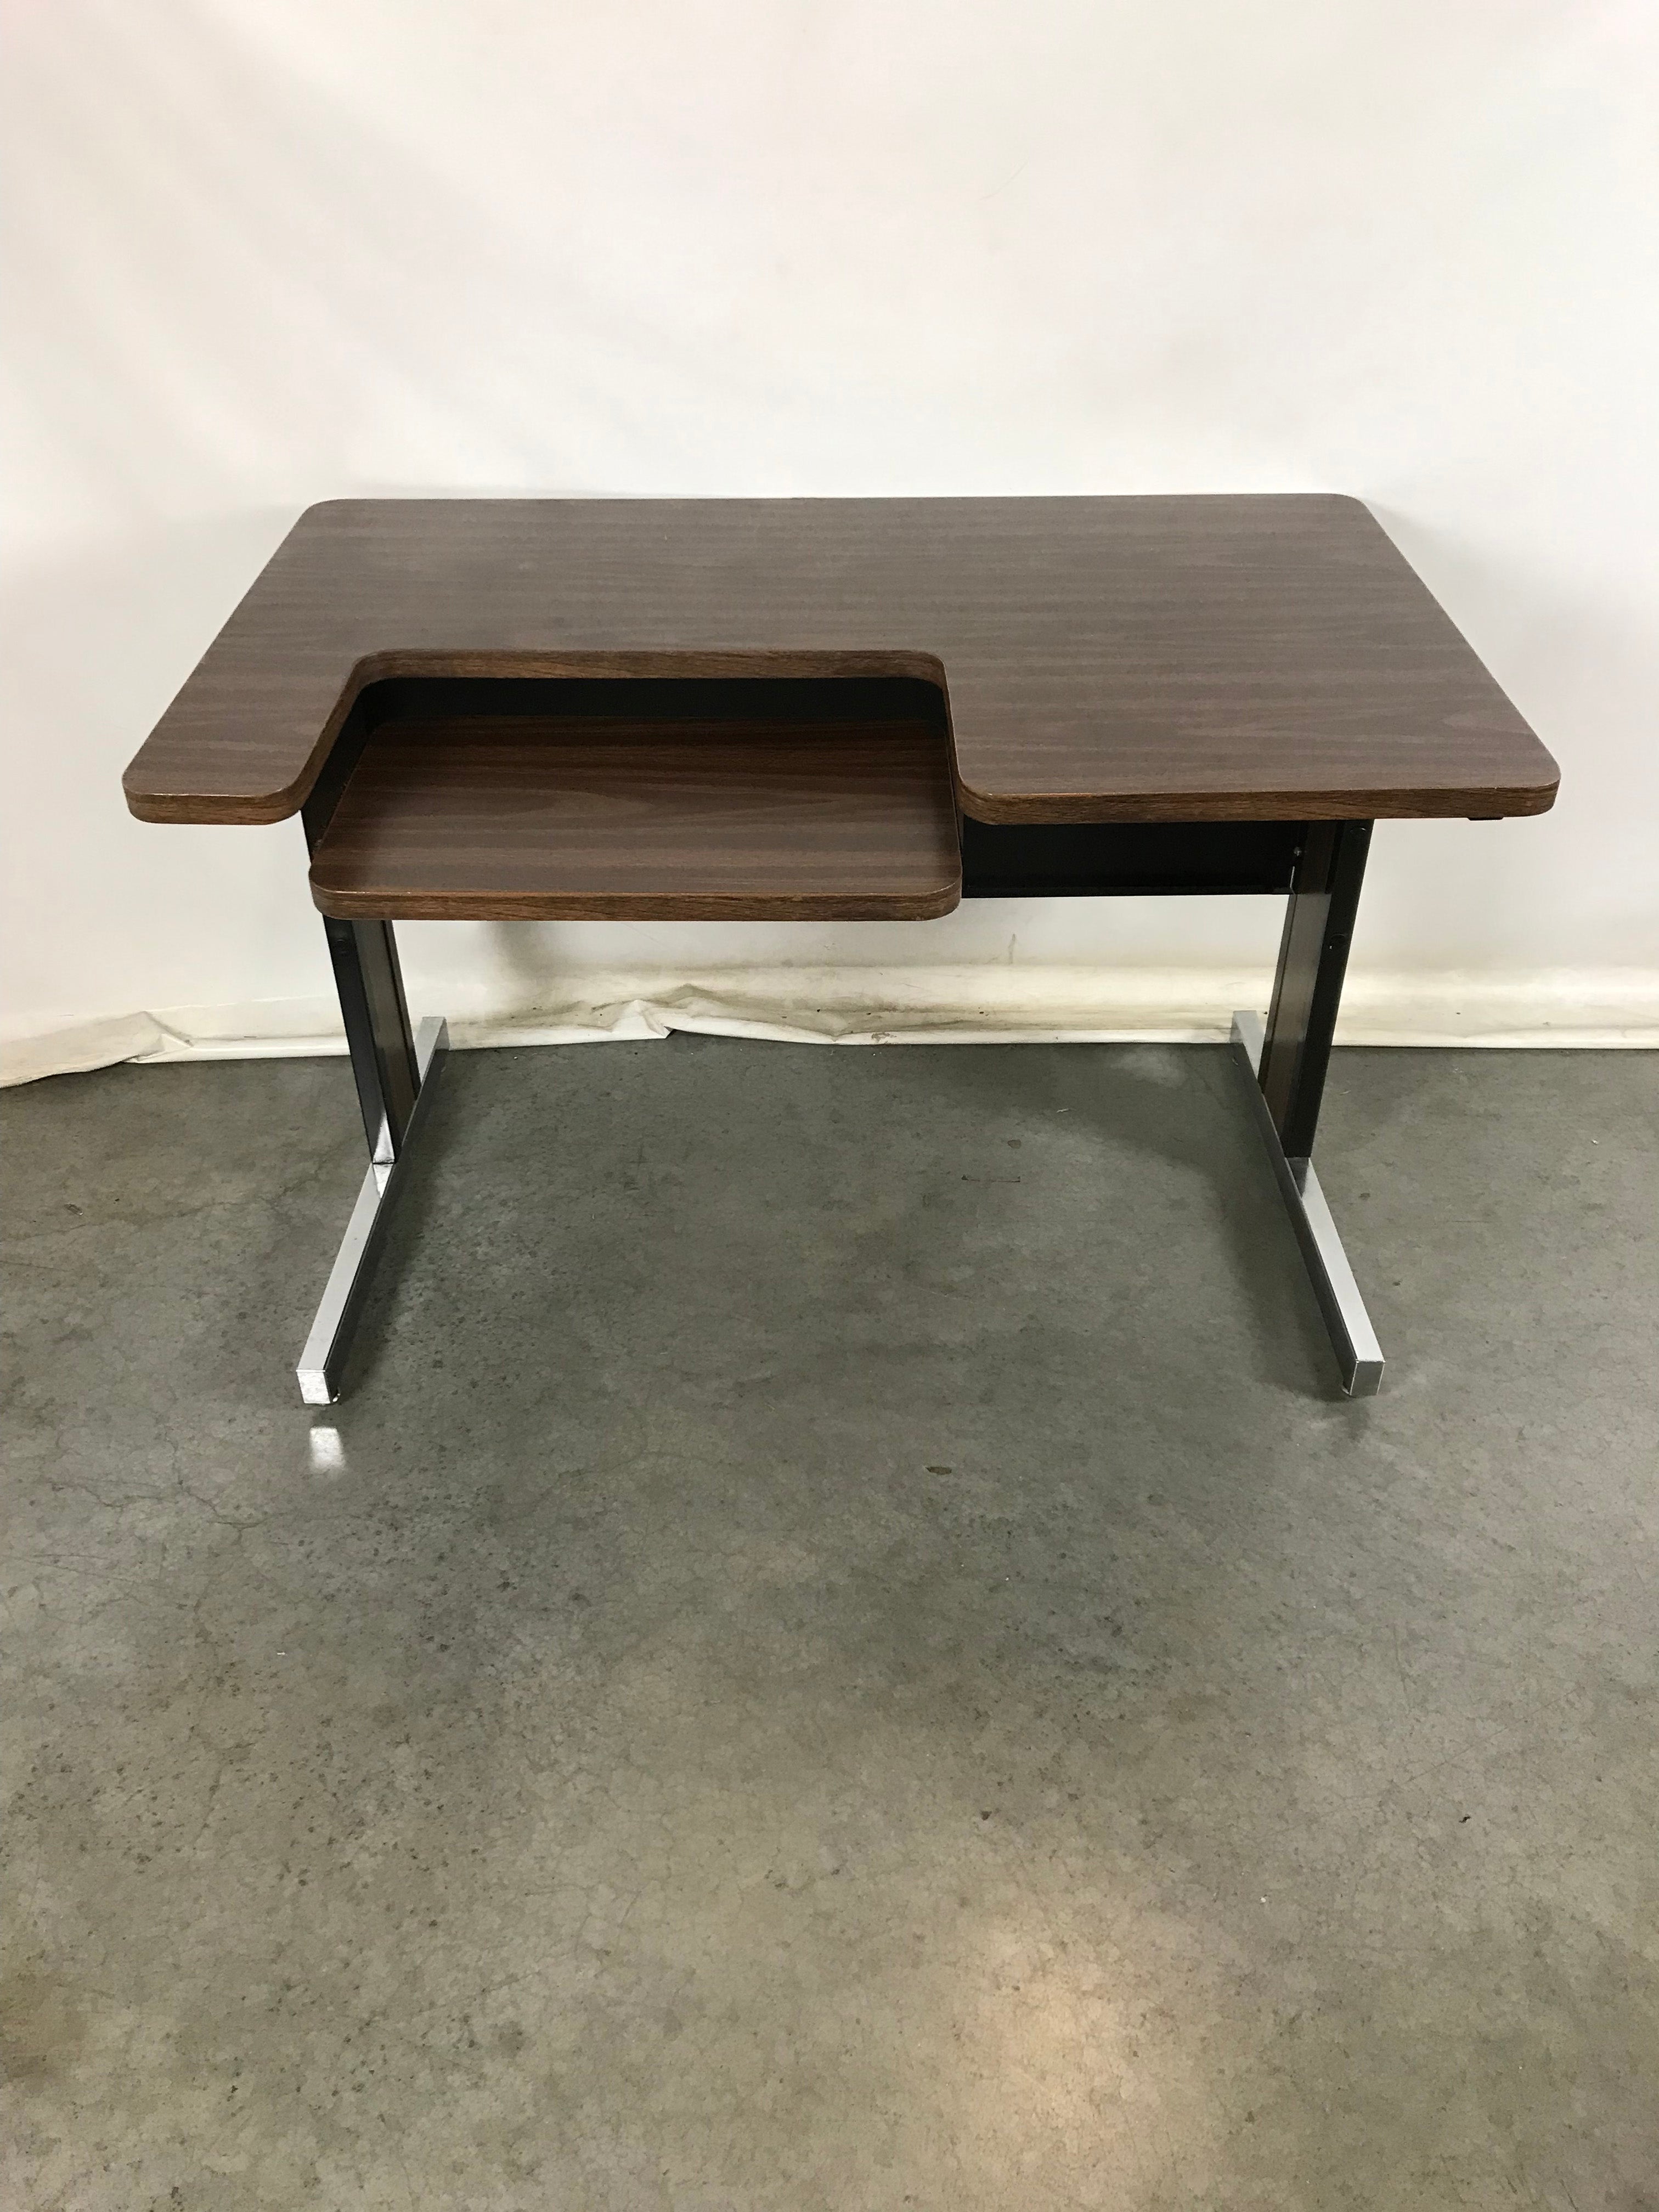 Dark Brown Wood Patterned Platform Desk